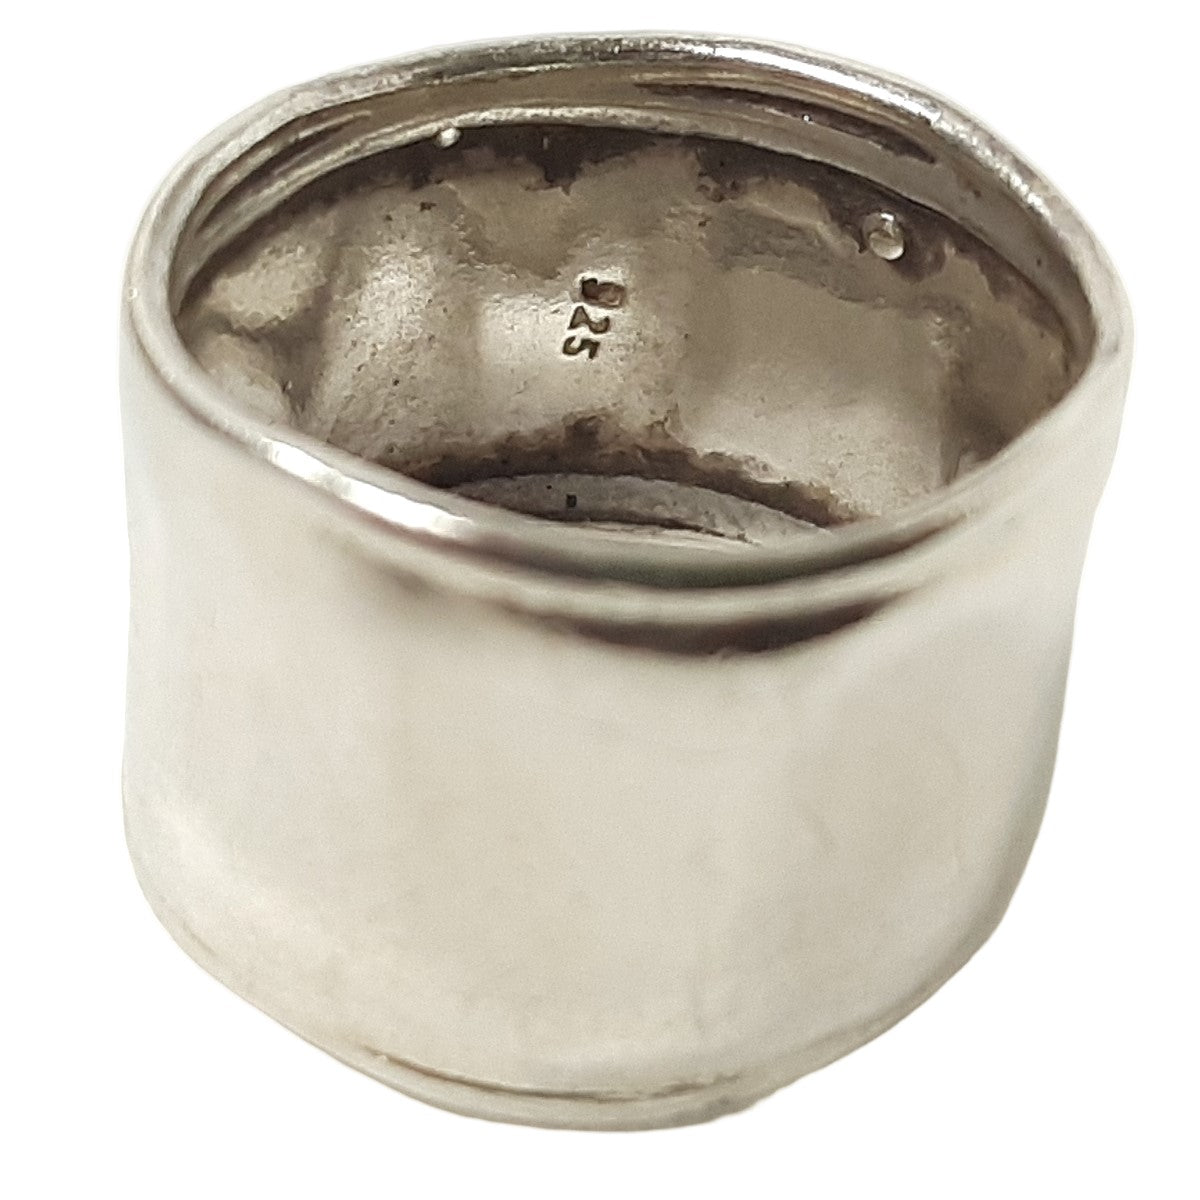 ヴィンテージ イスラエル シルバー925 タタキ リング 16号6g / Vintage Israel Sterling Silver Hammered Ring